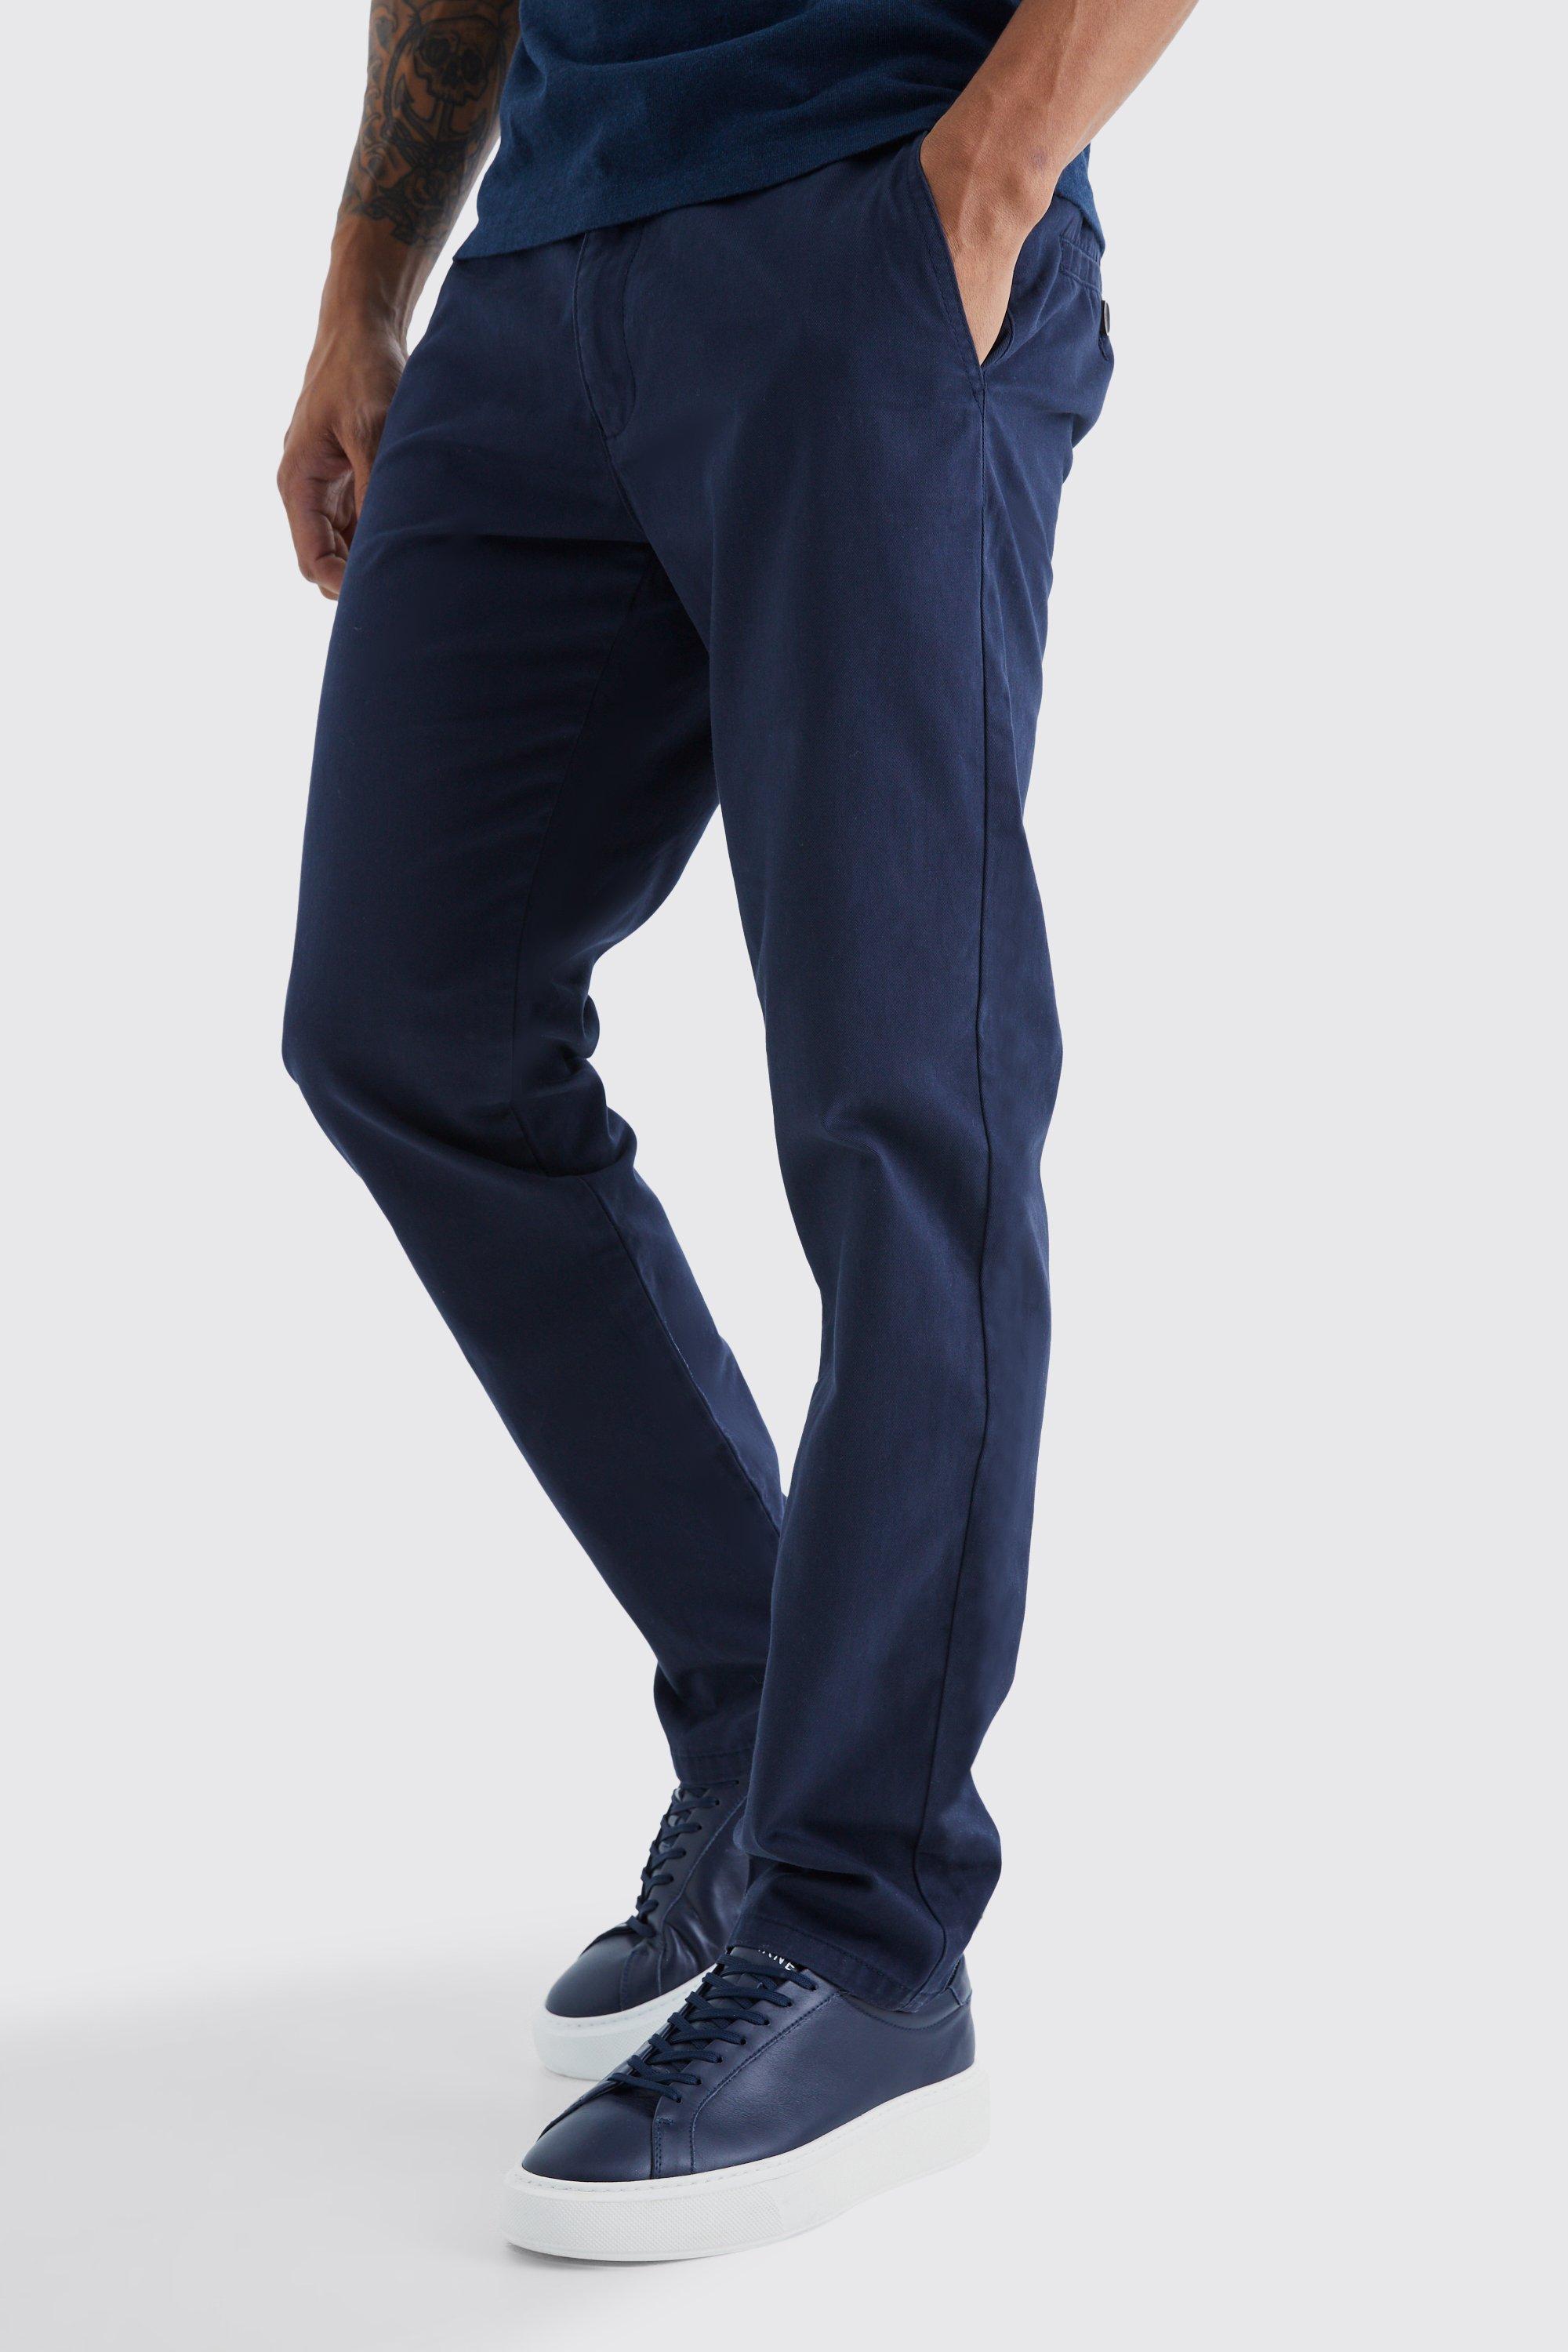 pantalon chino slim homme - bleu - 36, bleu